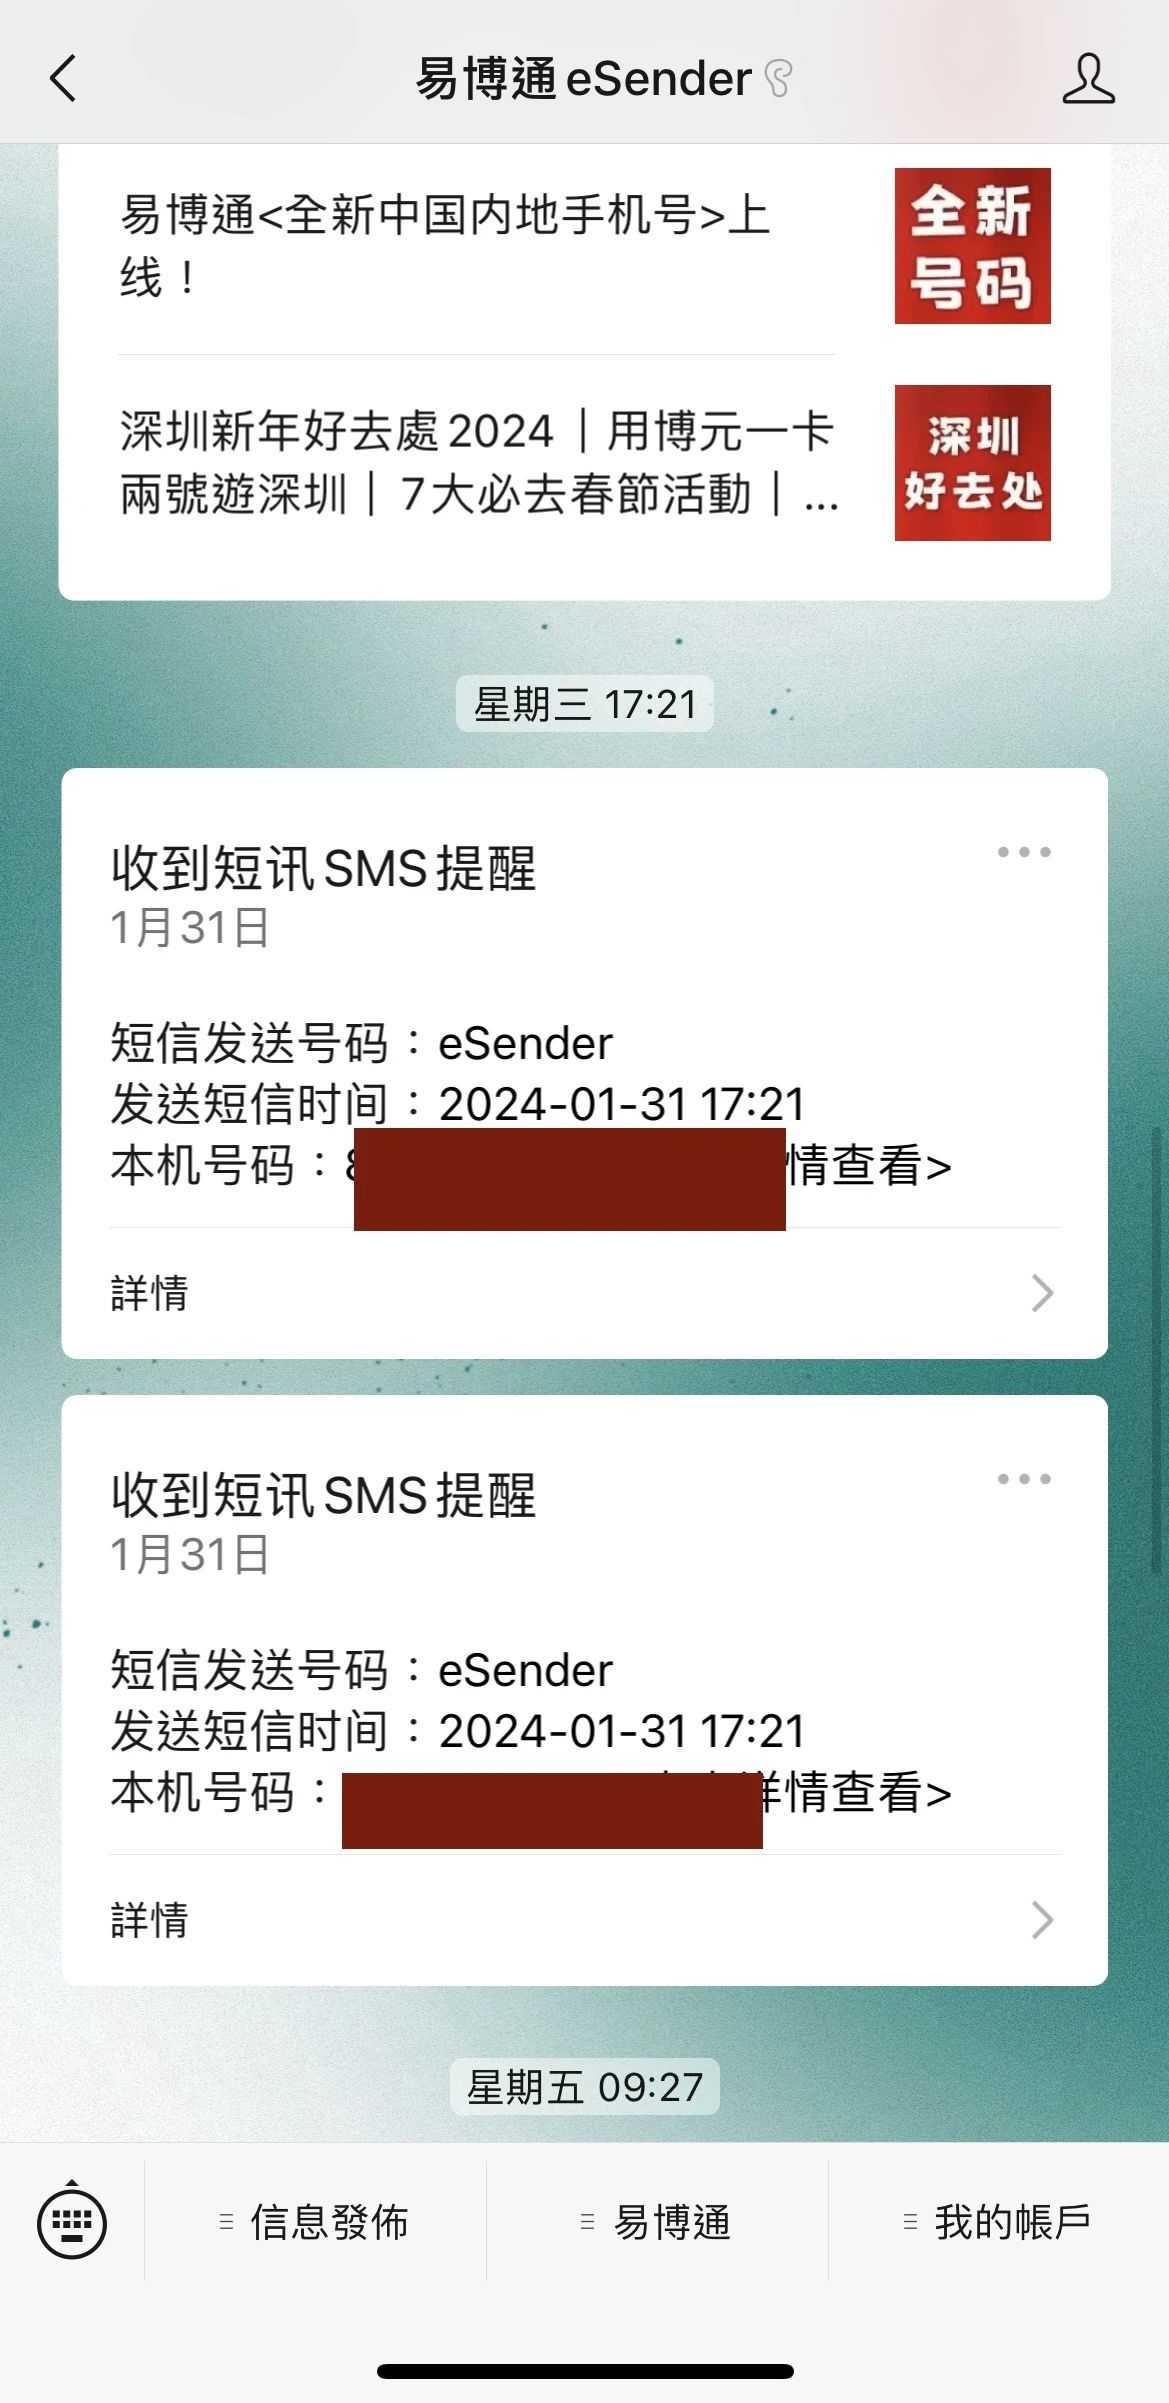 Pas 8: completeu el pagament i rebeu un SMS, que indica que el número de telèfon mòbil de Hong Kong s'ha ordenat correctament. L'11a foto